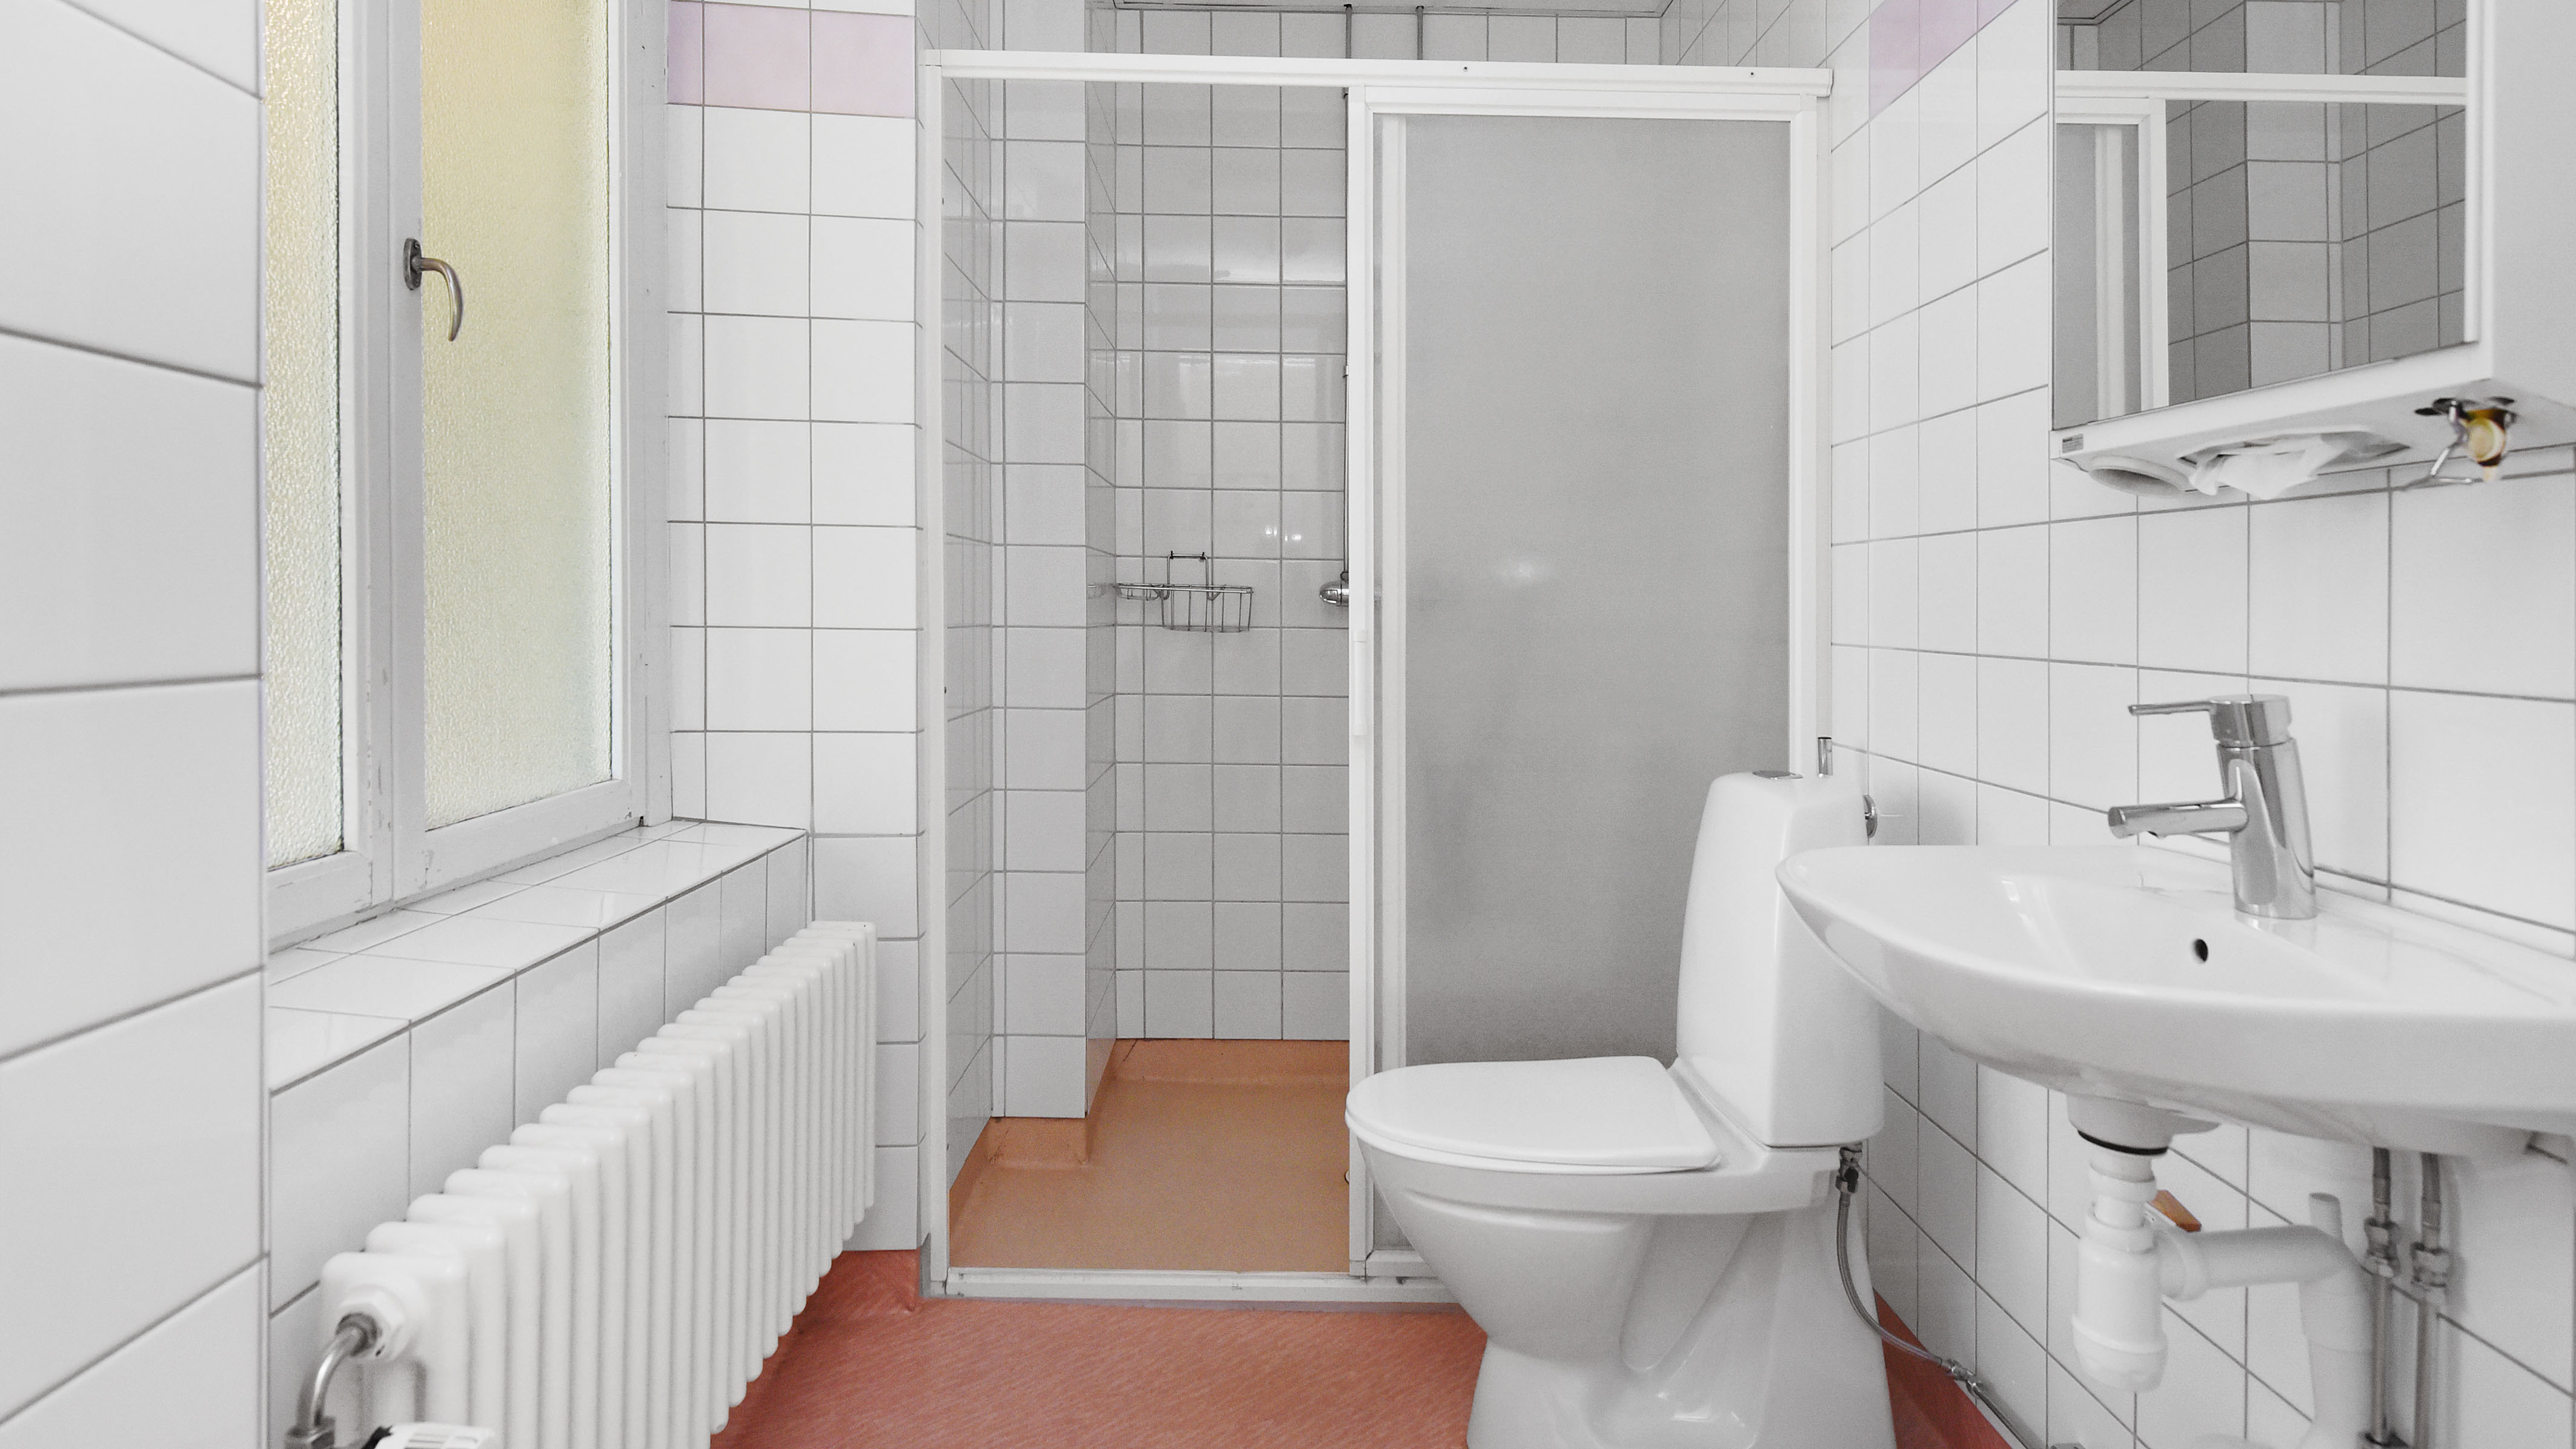 Gemensamma dusch och wc på systervåningen på Ersta hotell